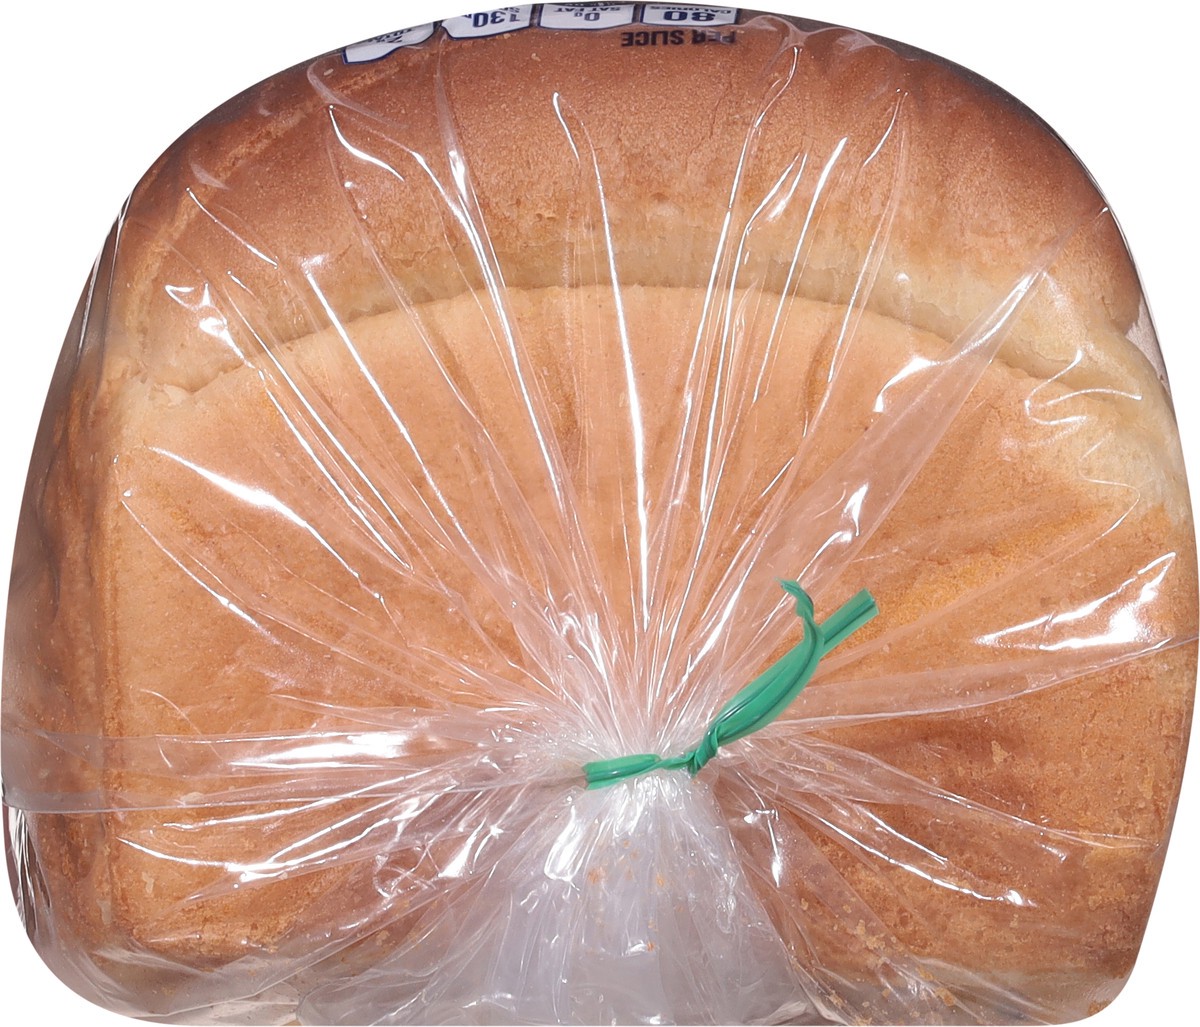 slide 5 of 9, Sunbeam Giant White Bread, 24 oz